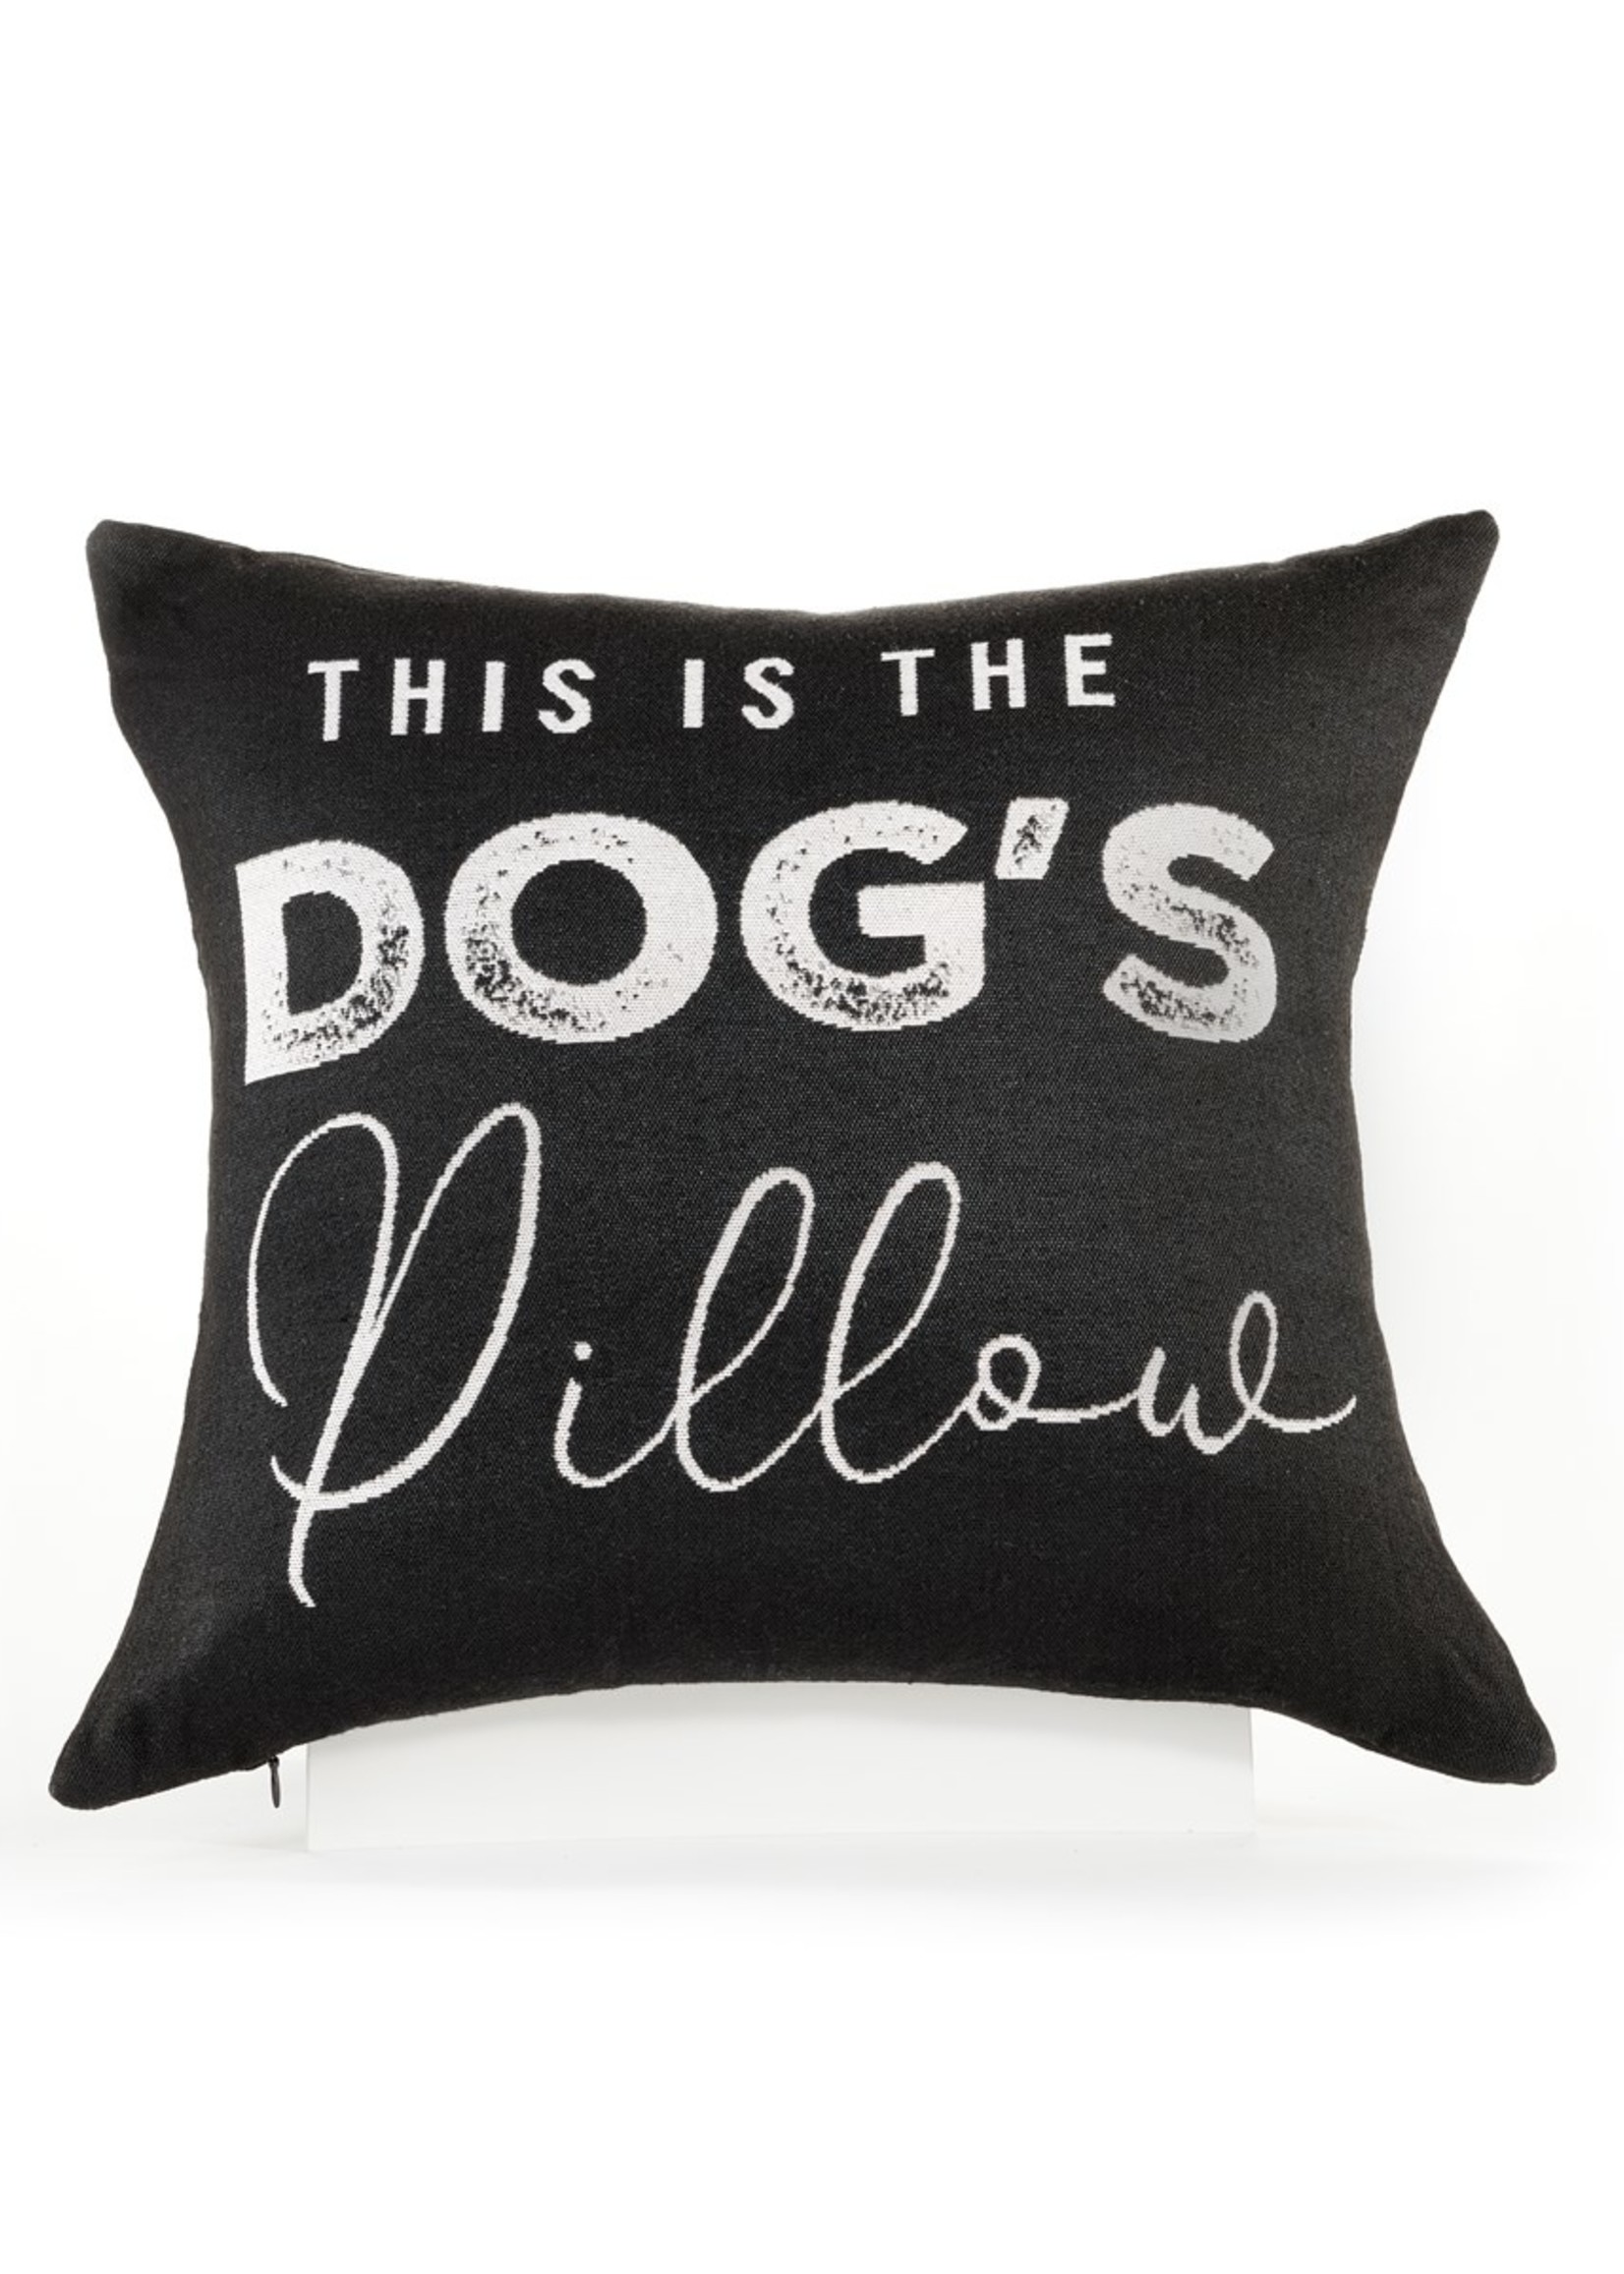 Dog's Pillow